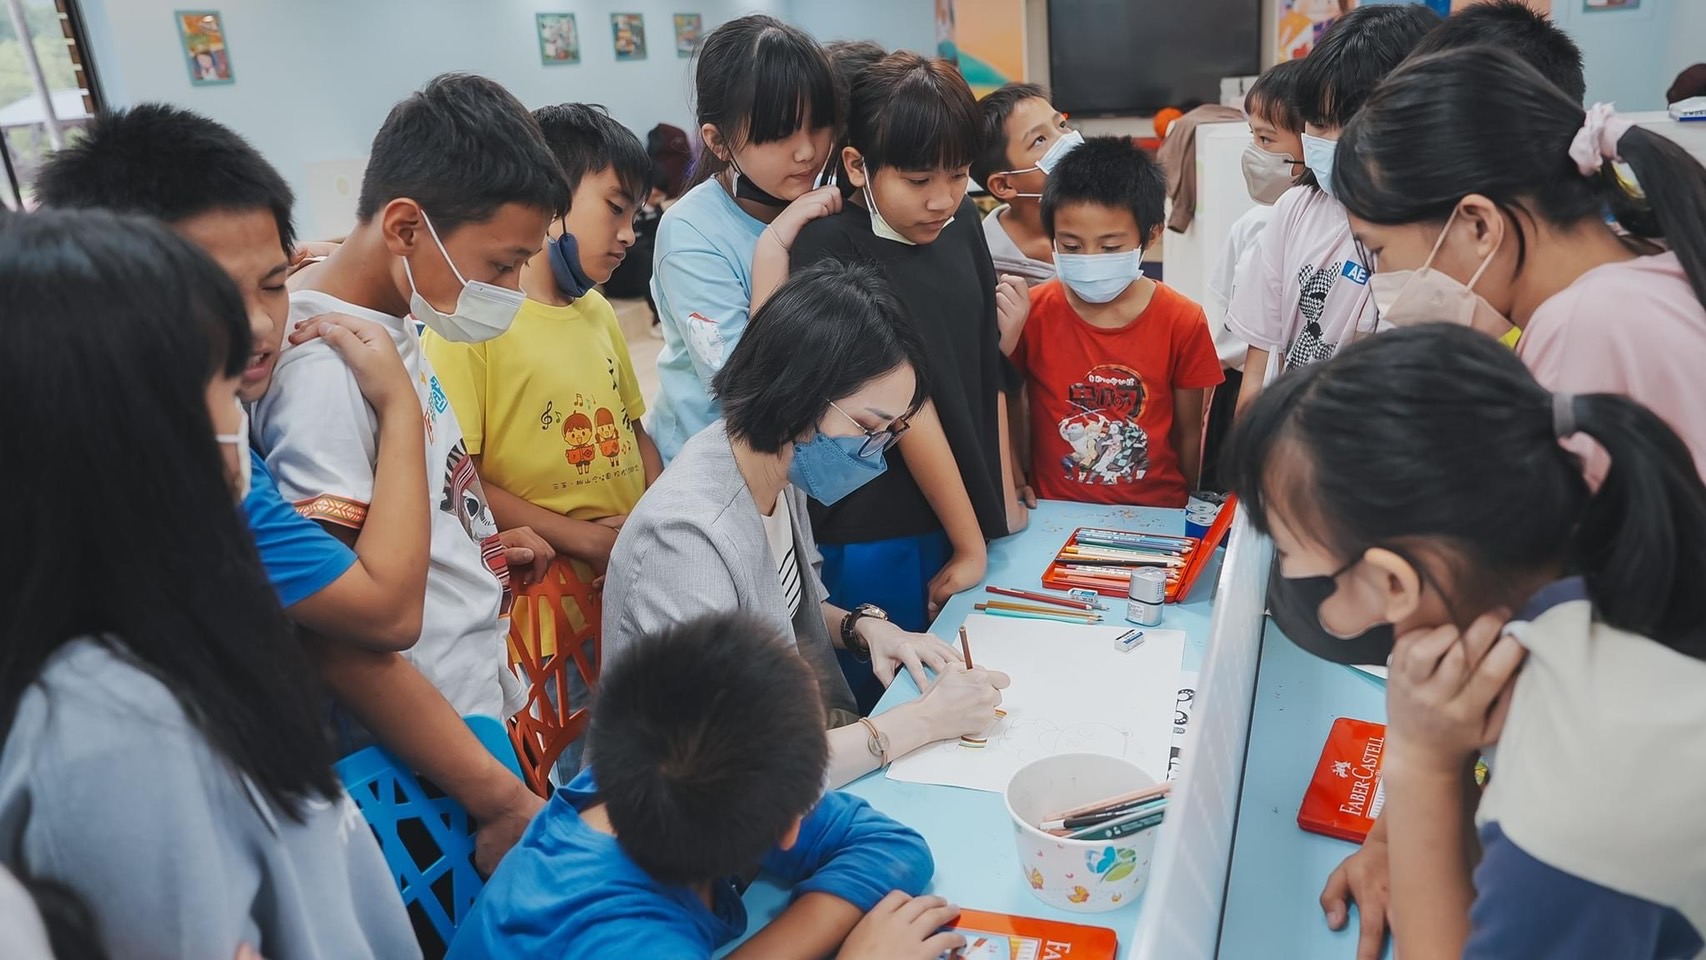 藝 術 家 王 子 麵 指 導 新 竹 桃 山 國 小 學 童 創 作 。 